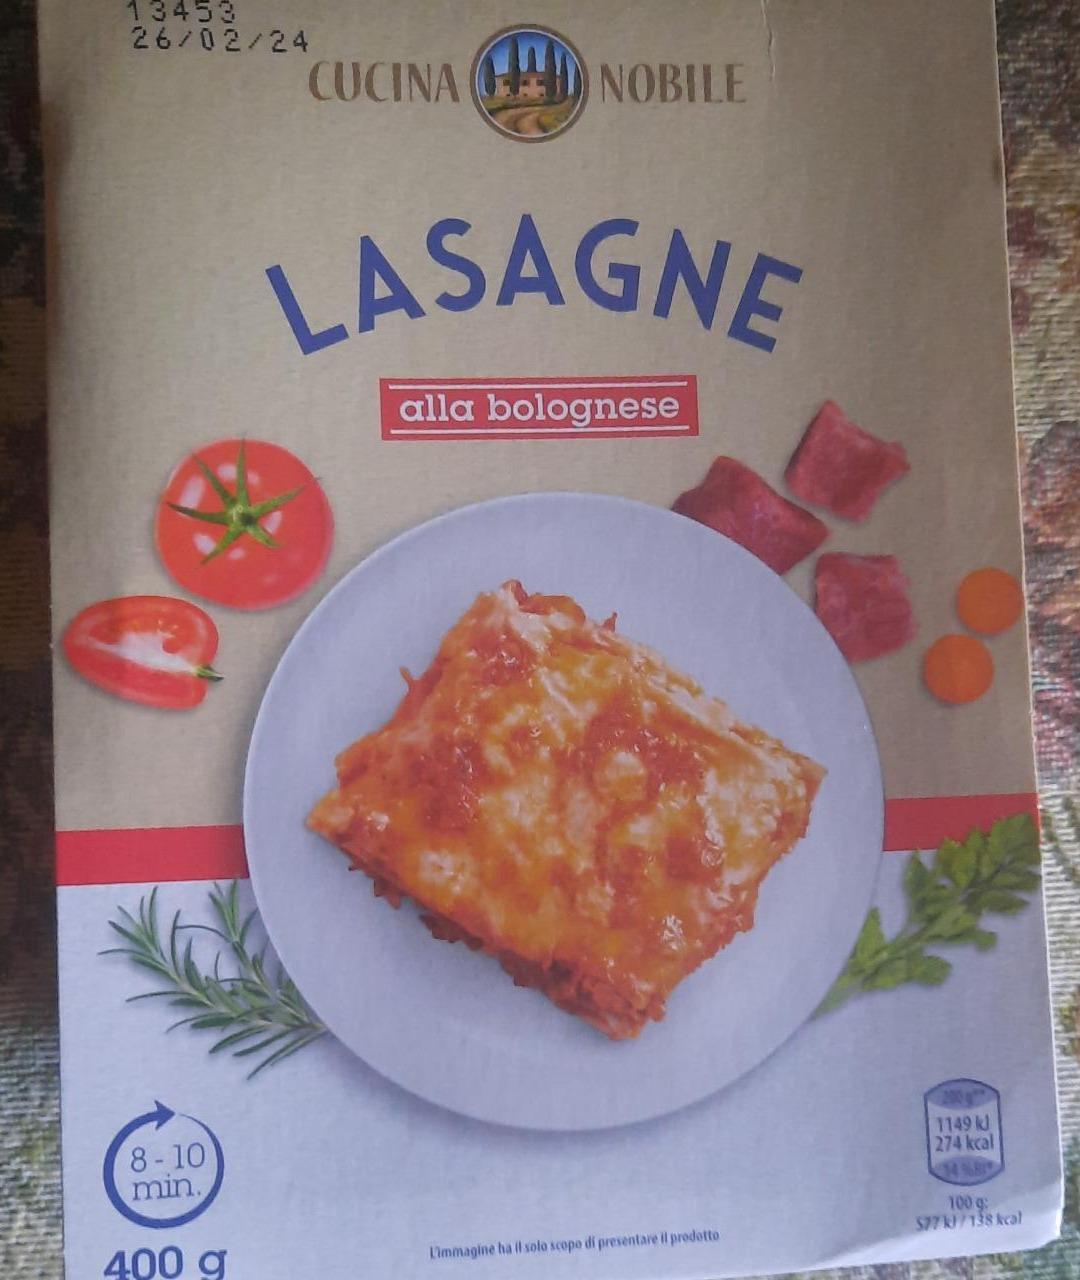 Фото - Lasagne Cucina Nobile